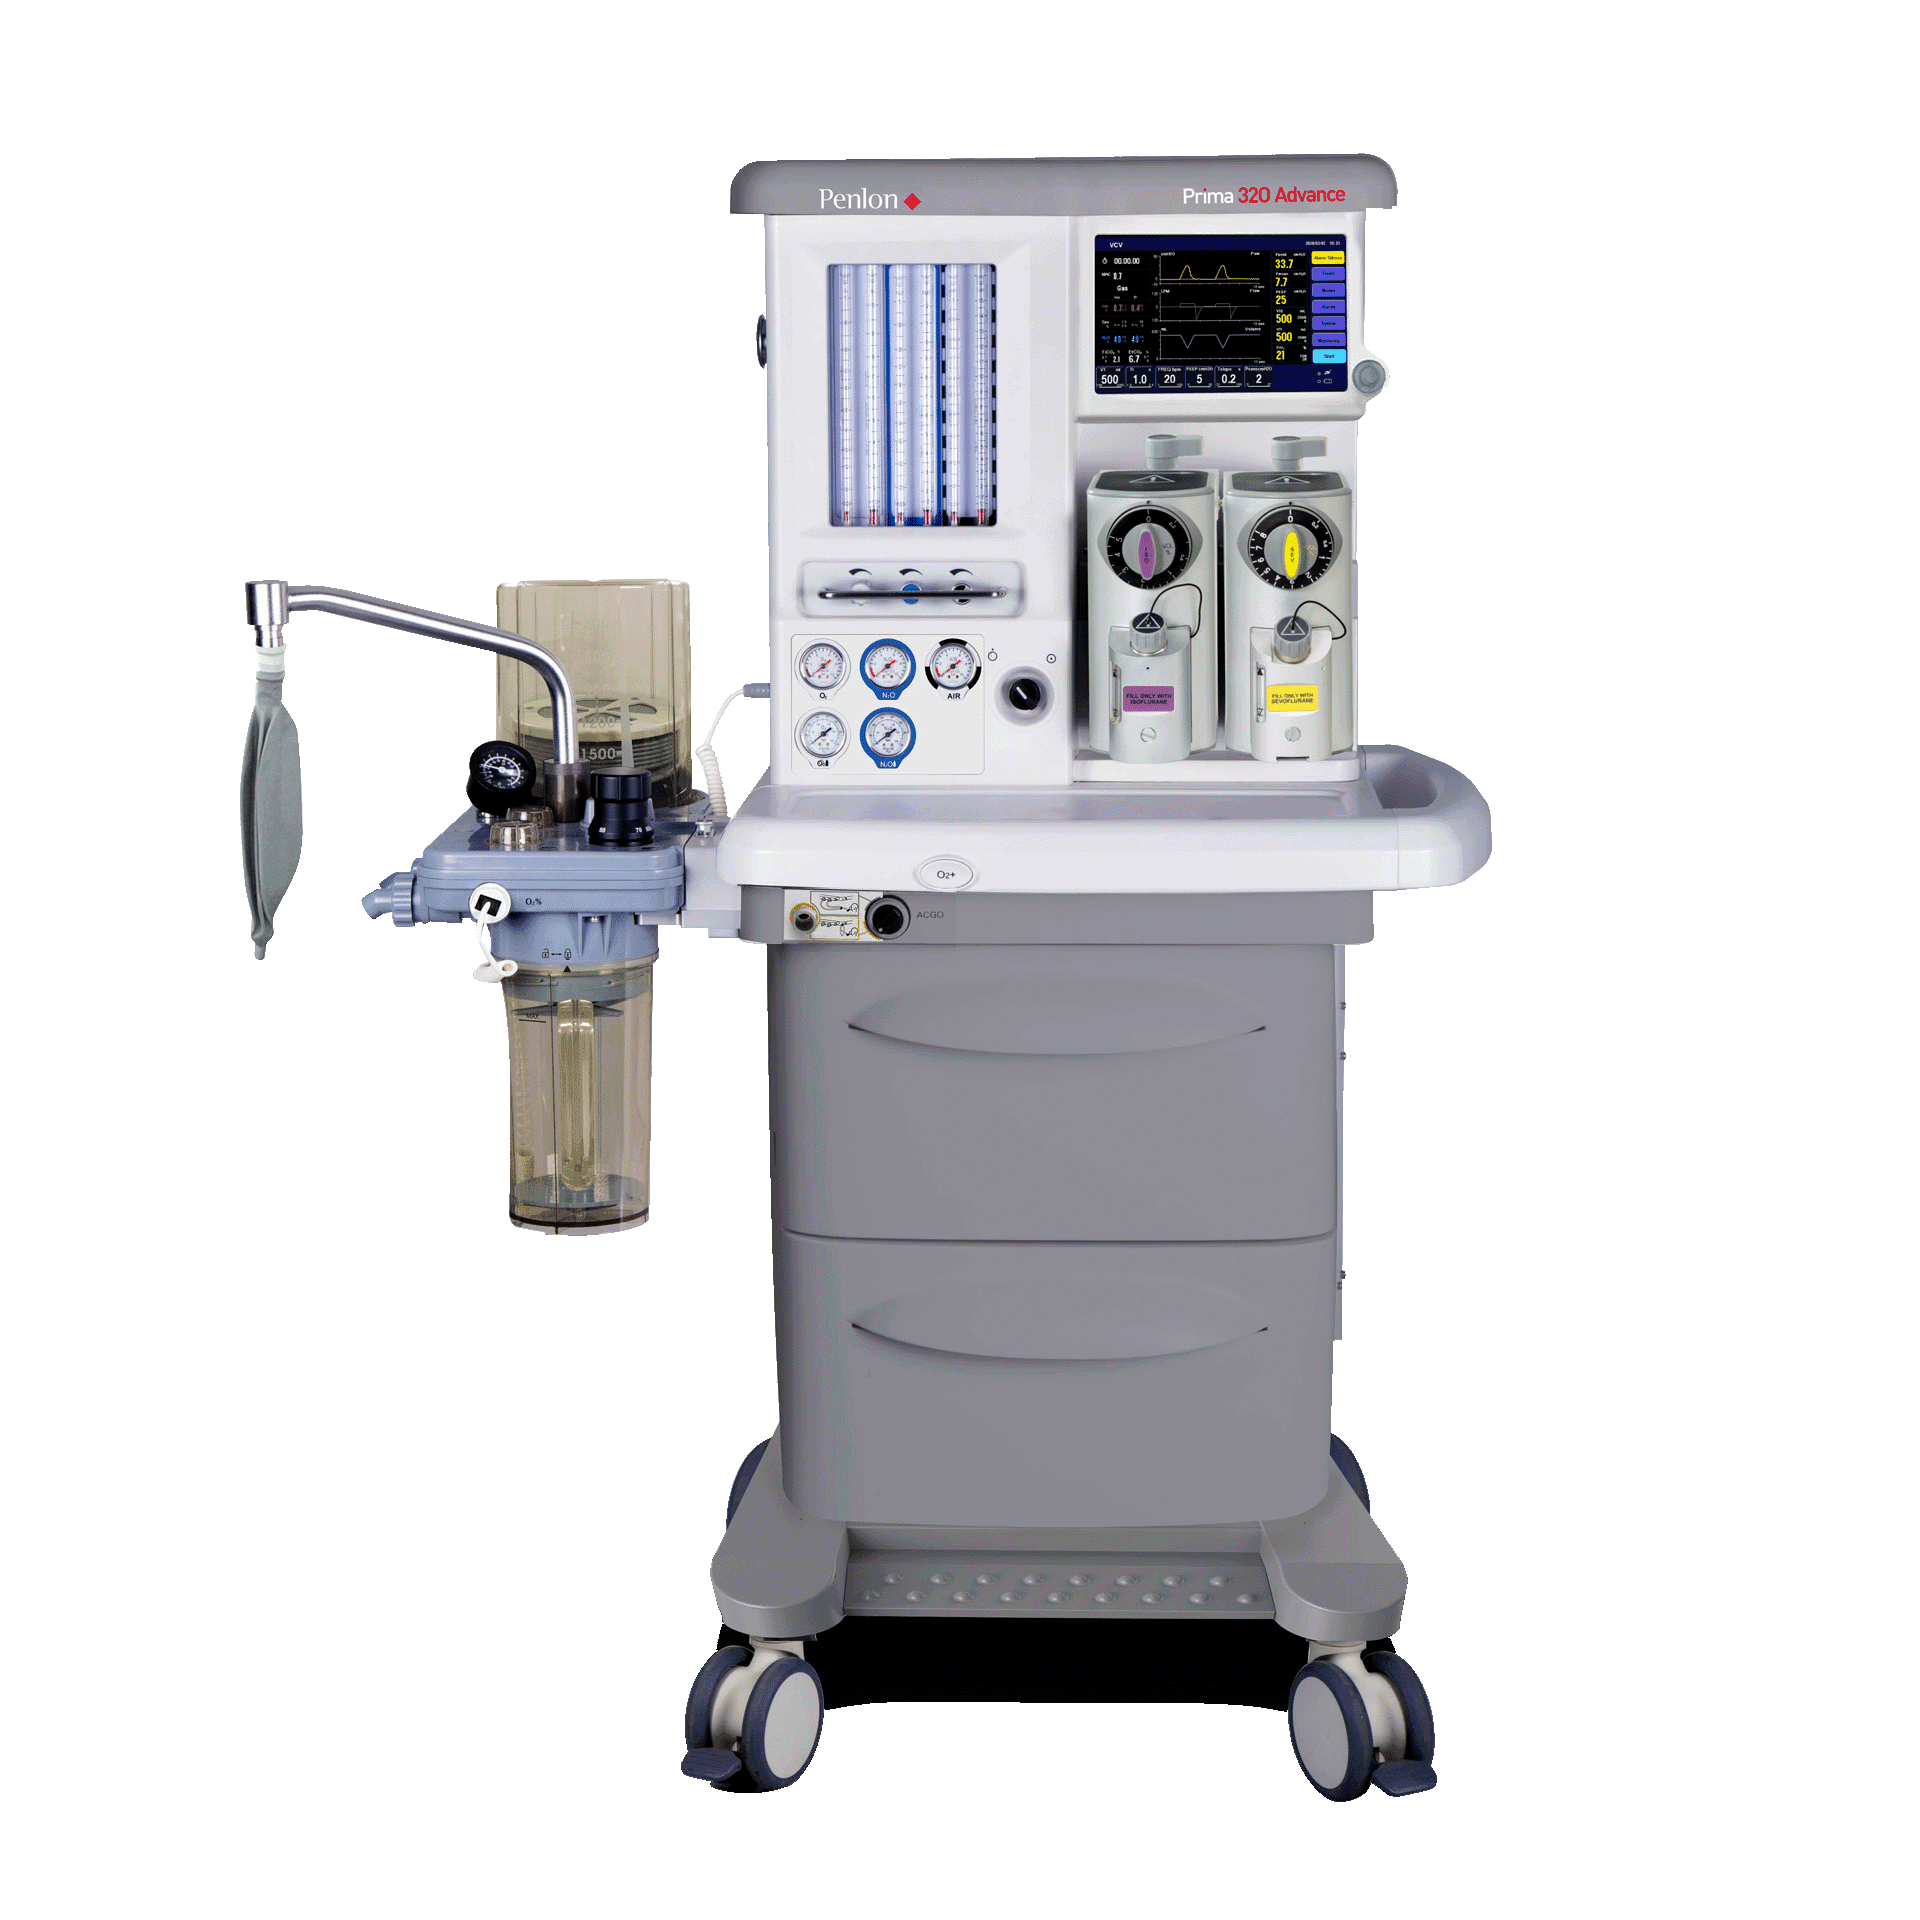 เครื่องดมยาสลบพร้อมเครื่องช่วยหายใจ พร้อมวัดค่าก๊าซขณะดมยาสลบ Anesthesia machine Prima 320 Advance  Penlon